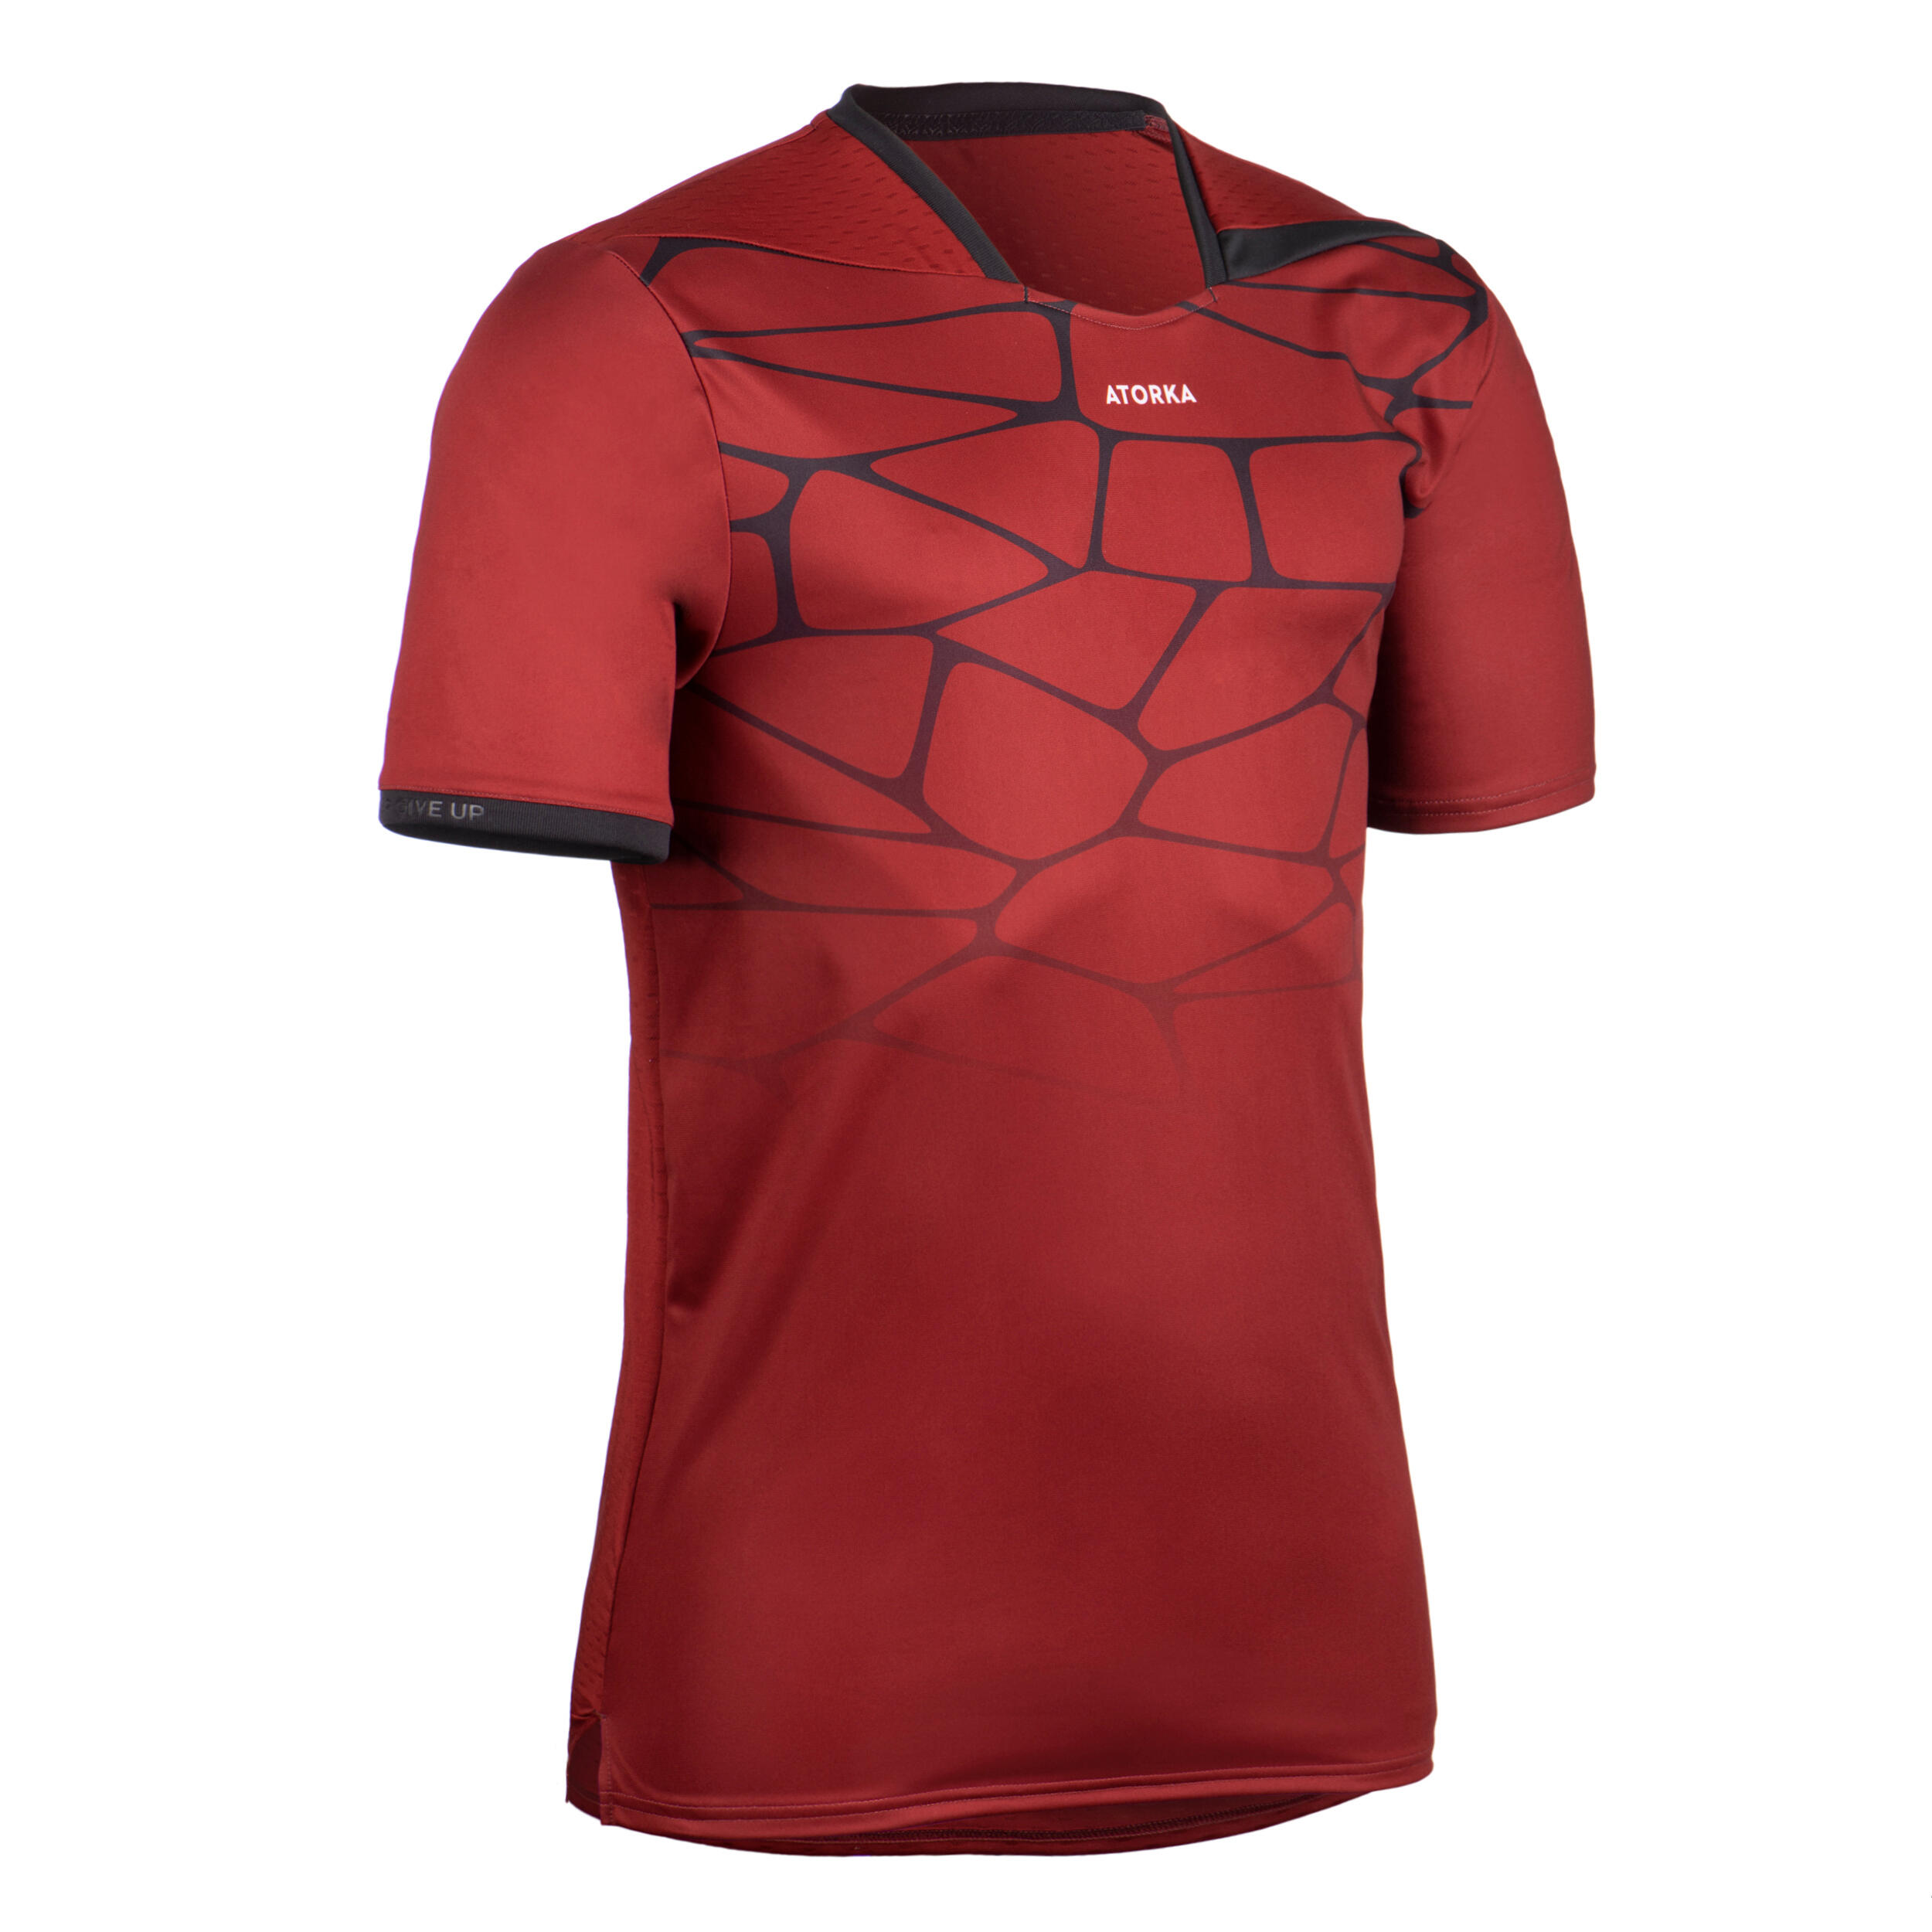 ATORKA Men's Short-Sleeved Handball Jersey H500 - Red/Black